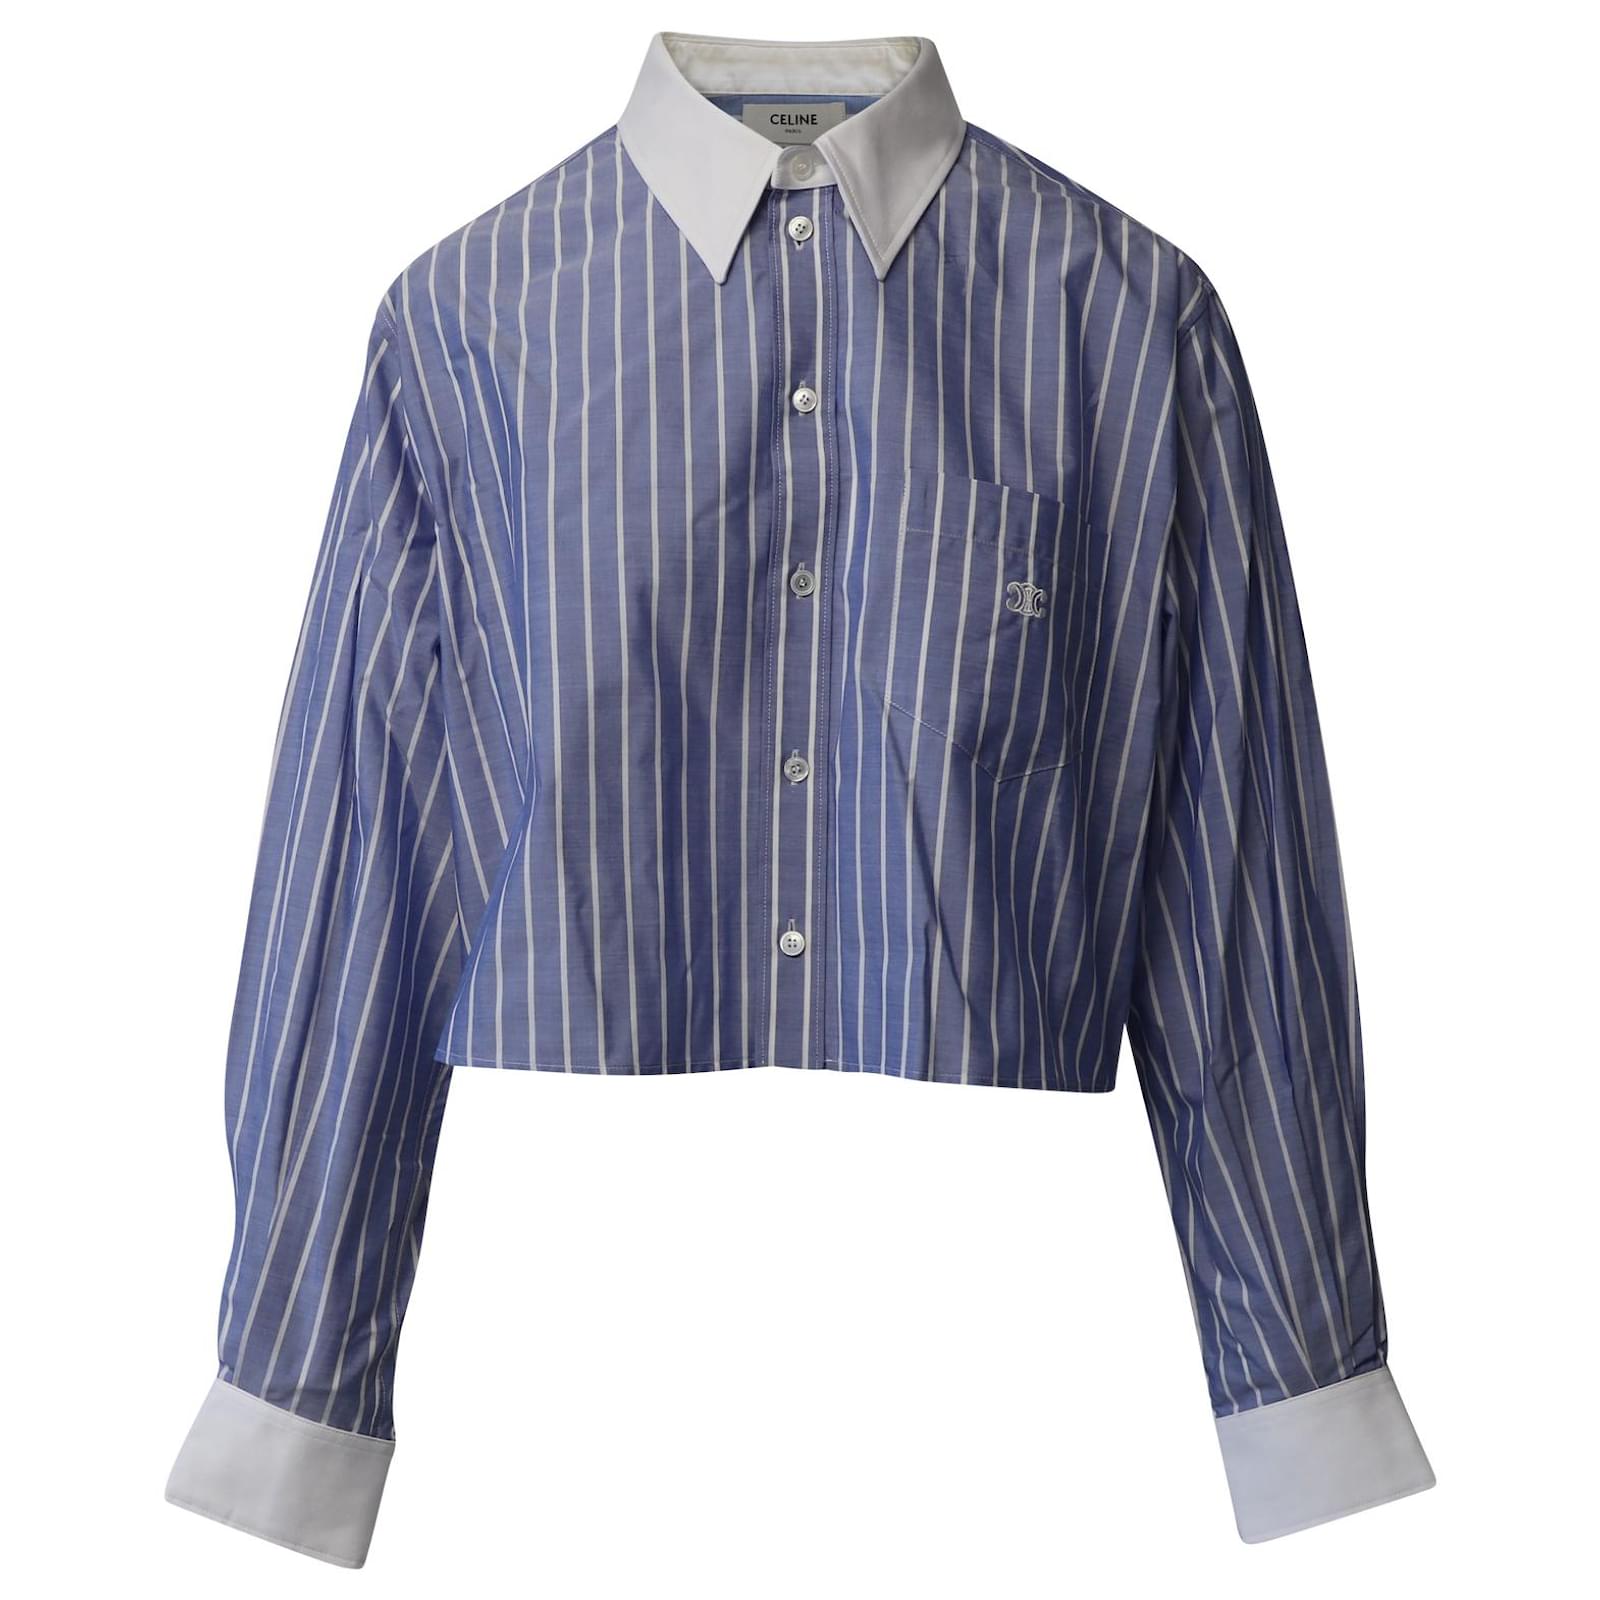 https://cdn1.jolicloset.com/imgr/full/2022/11/696747-1/celine-striped-cropped-shirt-in-light-blue-cotton.jpg